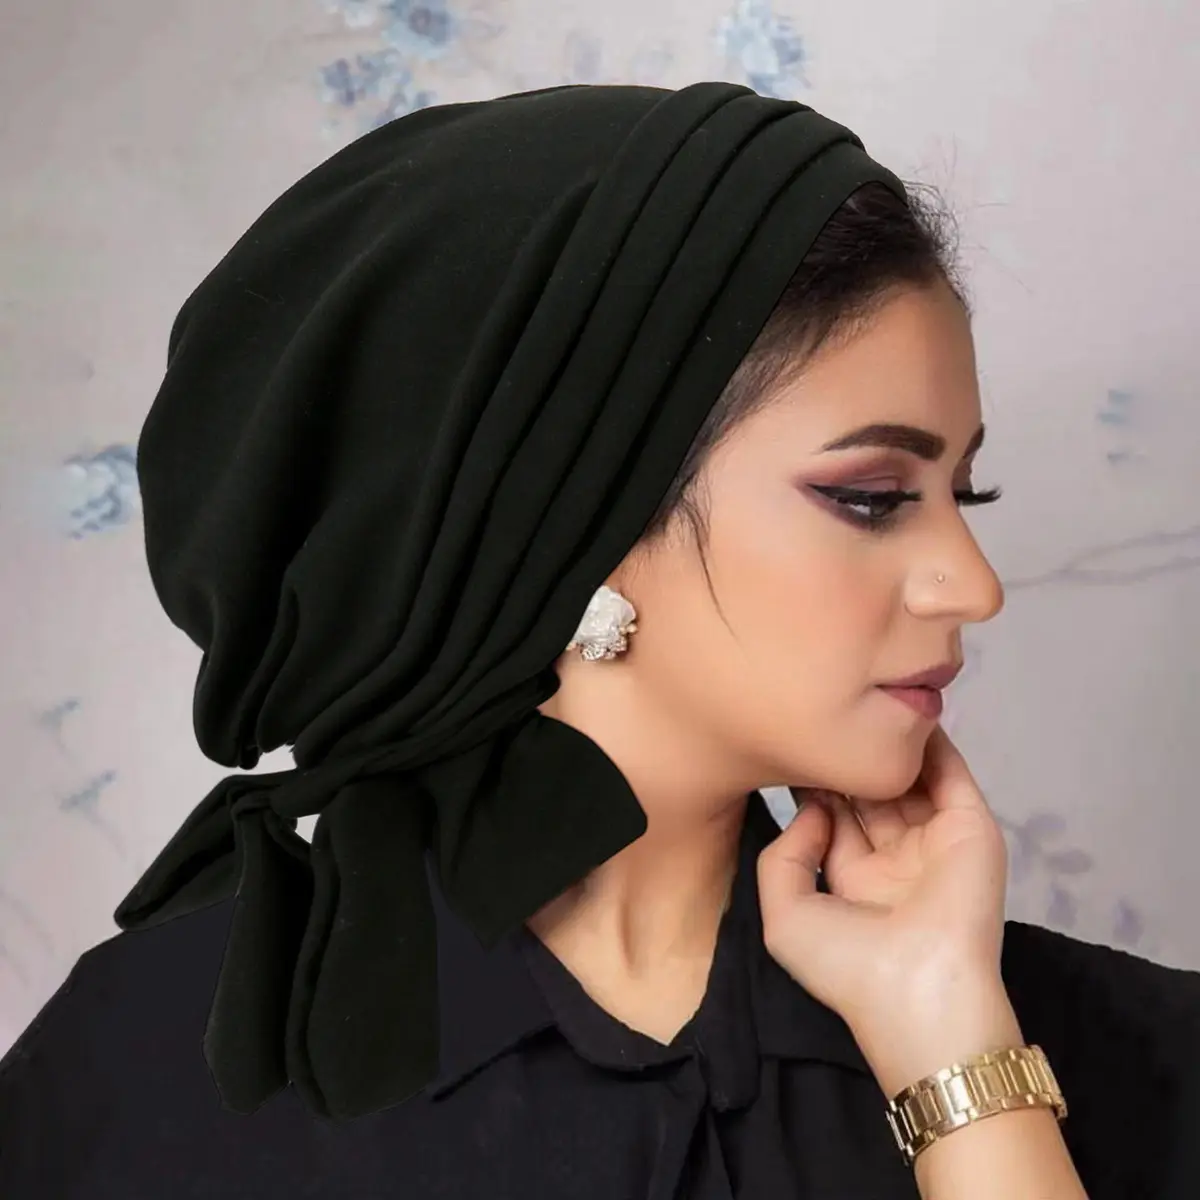 למסיבה הכי חדש 9 צבעים אתני סגנון מוסלמי צבע אחיד נמתח כובעי טורבן כיסוי ראש כימו כיסוי ראש כובע לנשים בנות